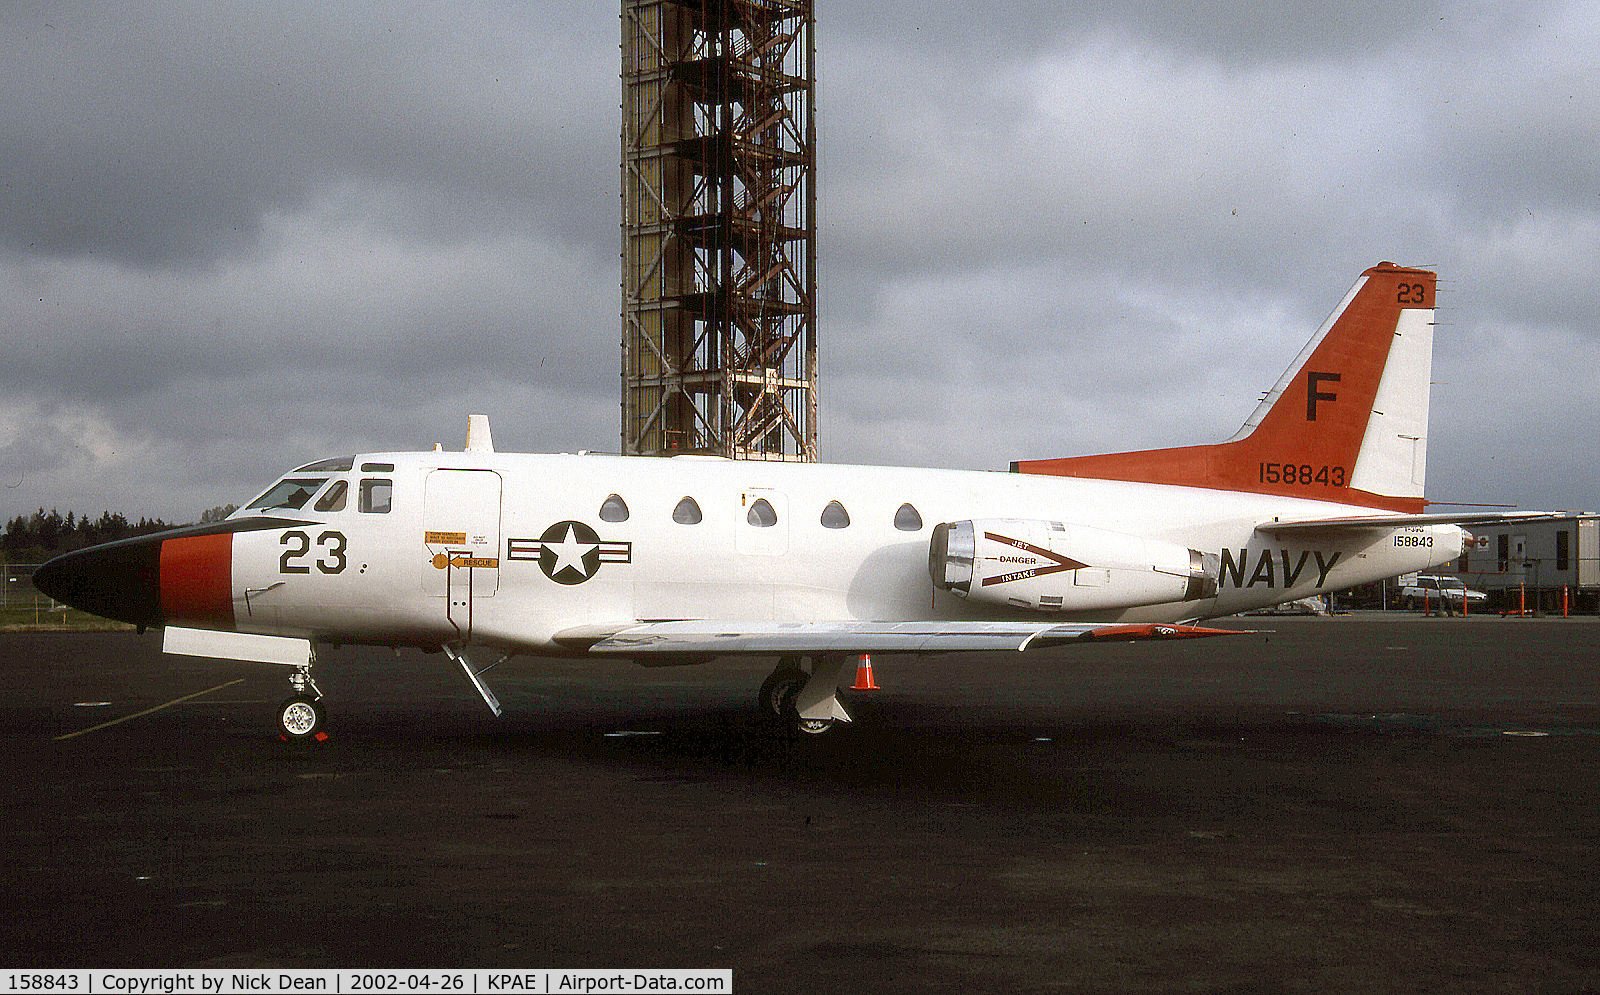 158843, 1971 North American Rockwell CT-39G Sabreliner C/N 306-52, KPAE